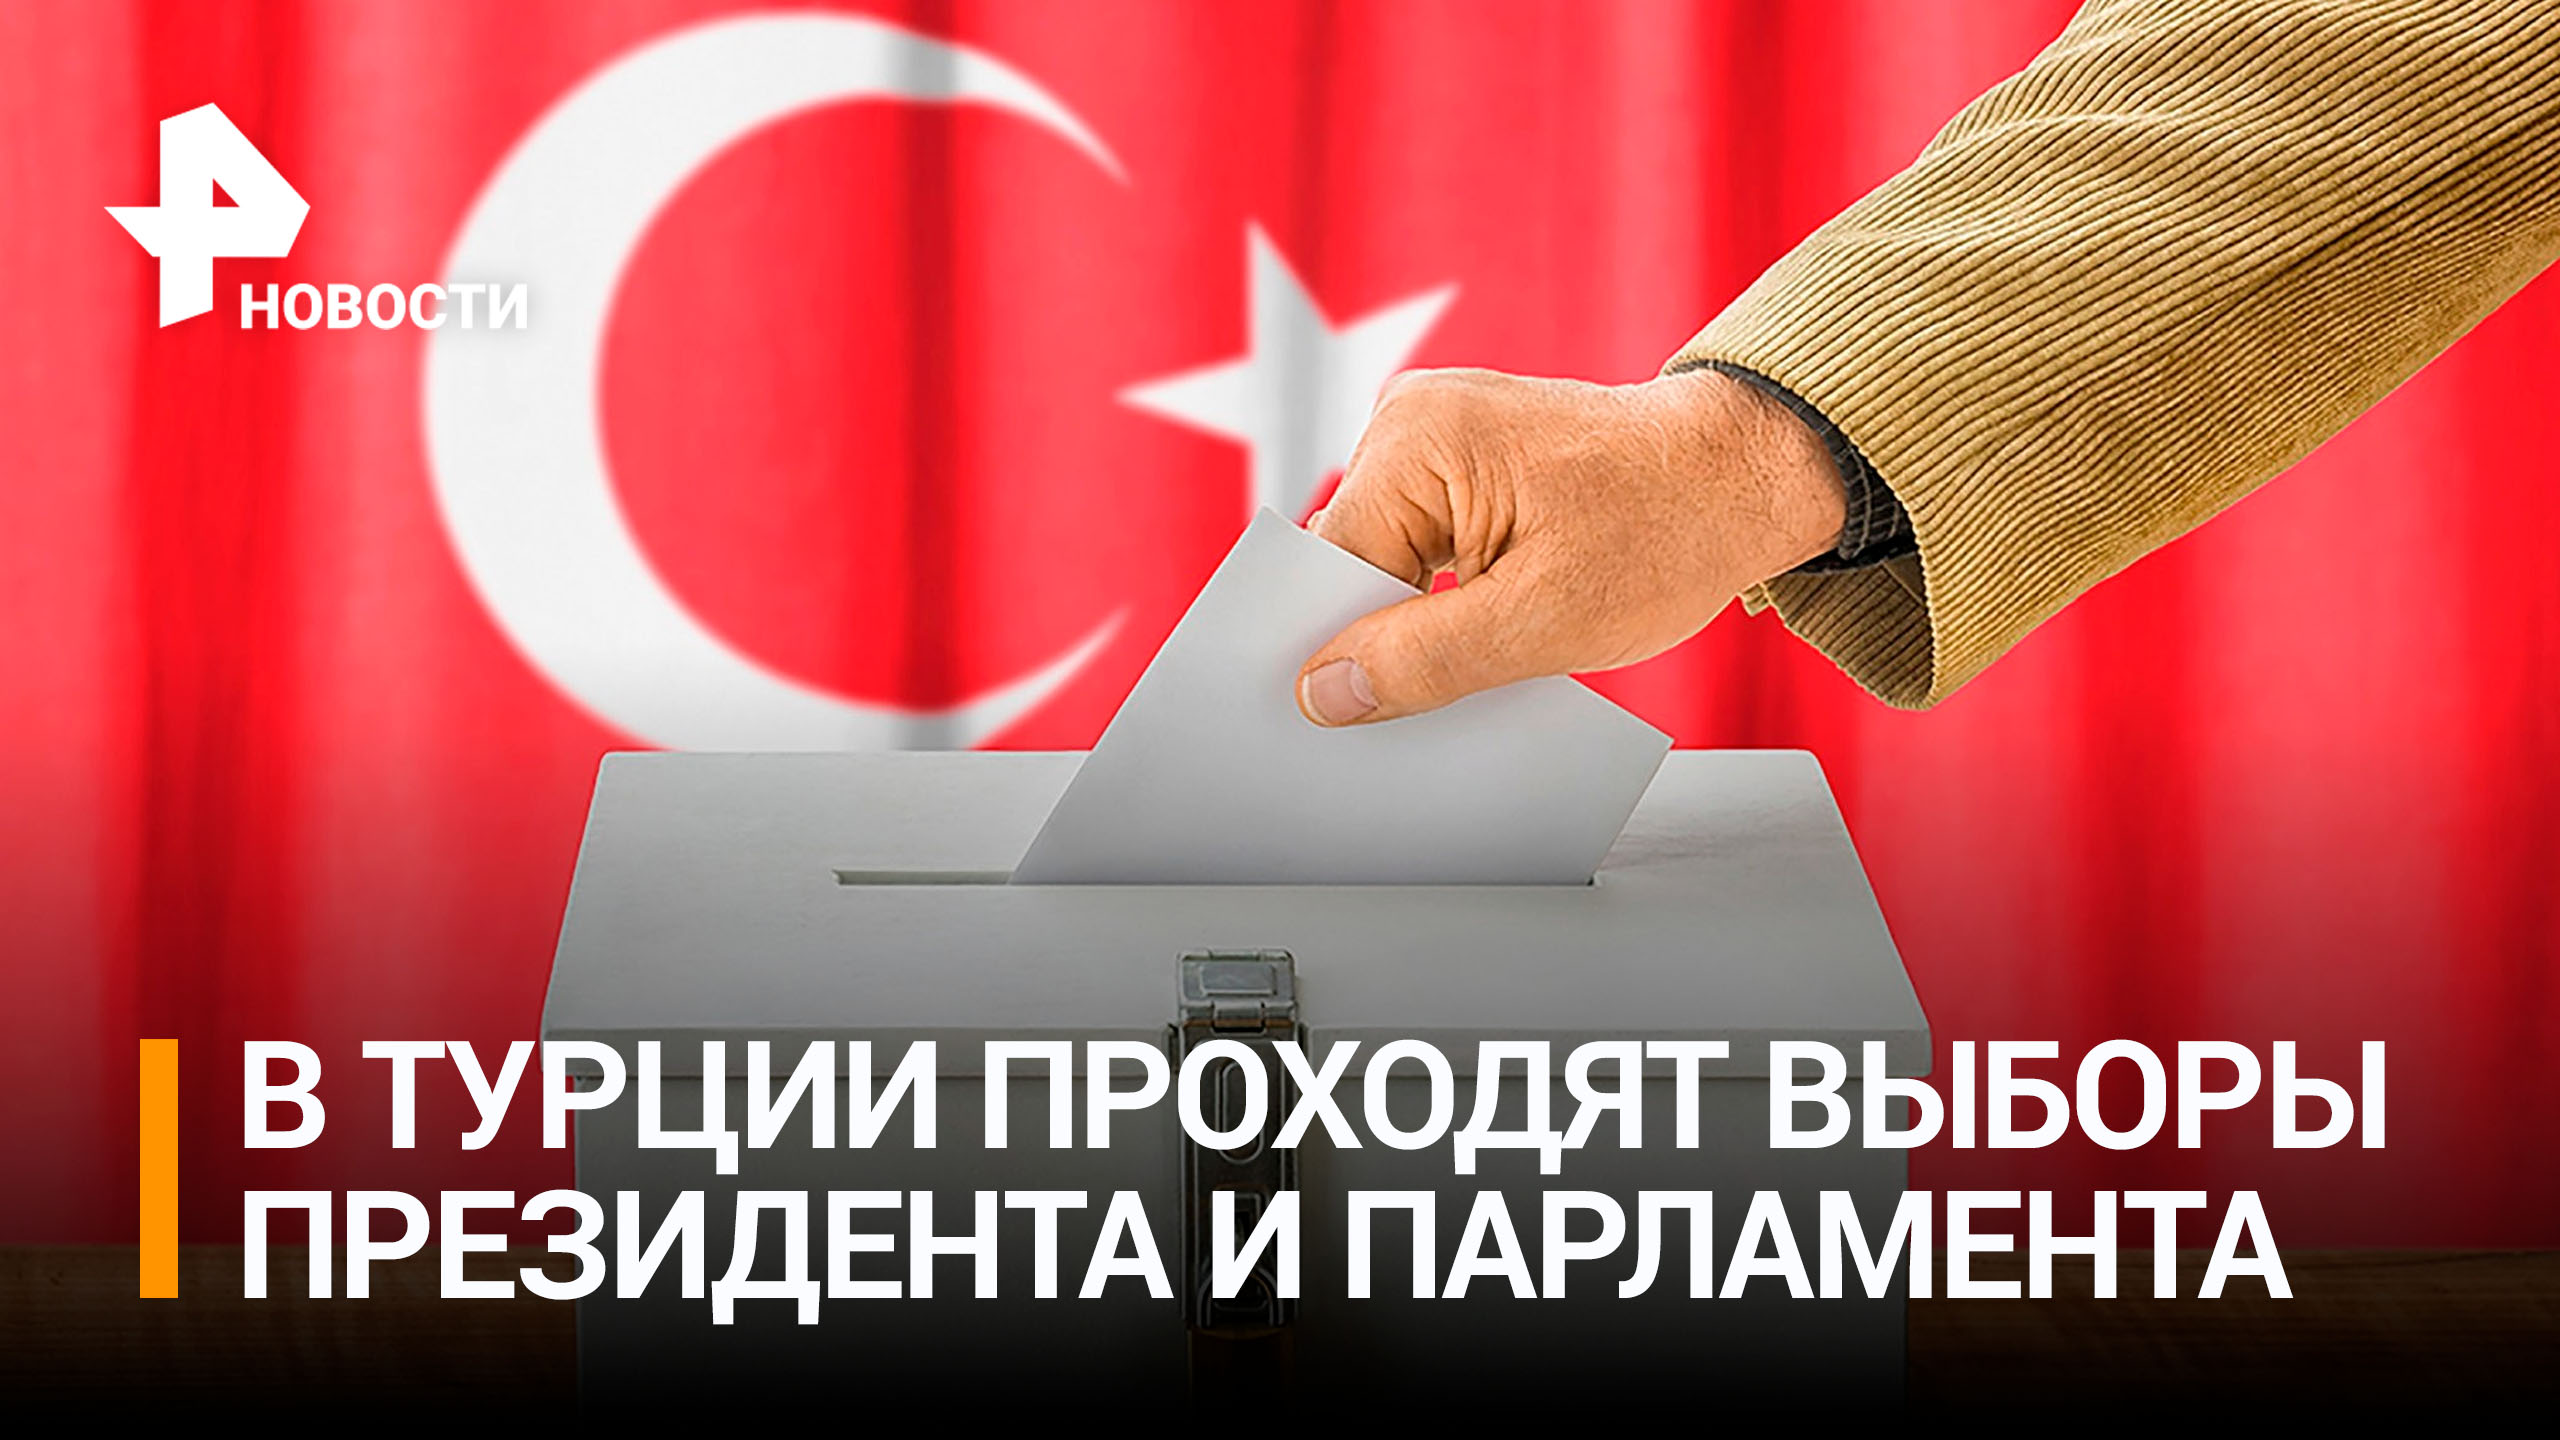 В Турции сегодня выбирают президента и парламент / РЕН Новости